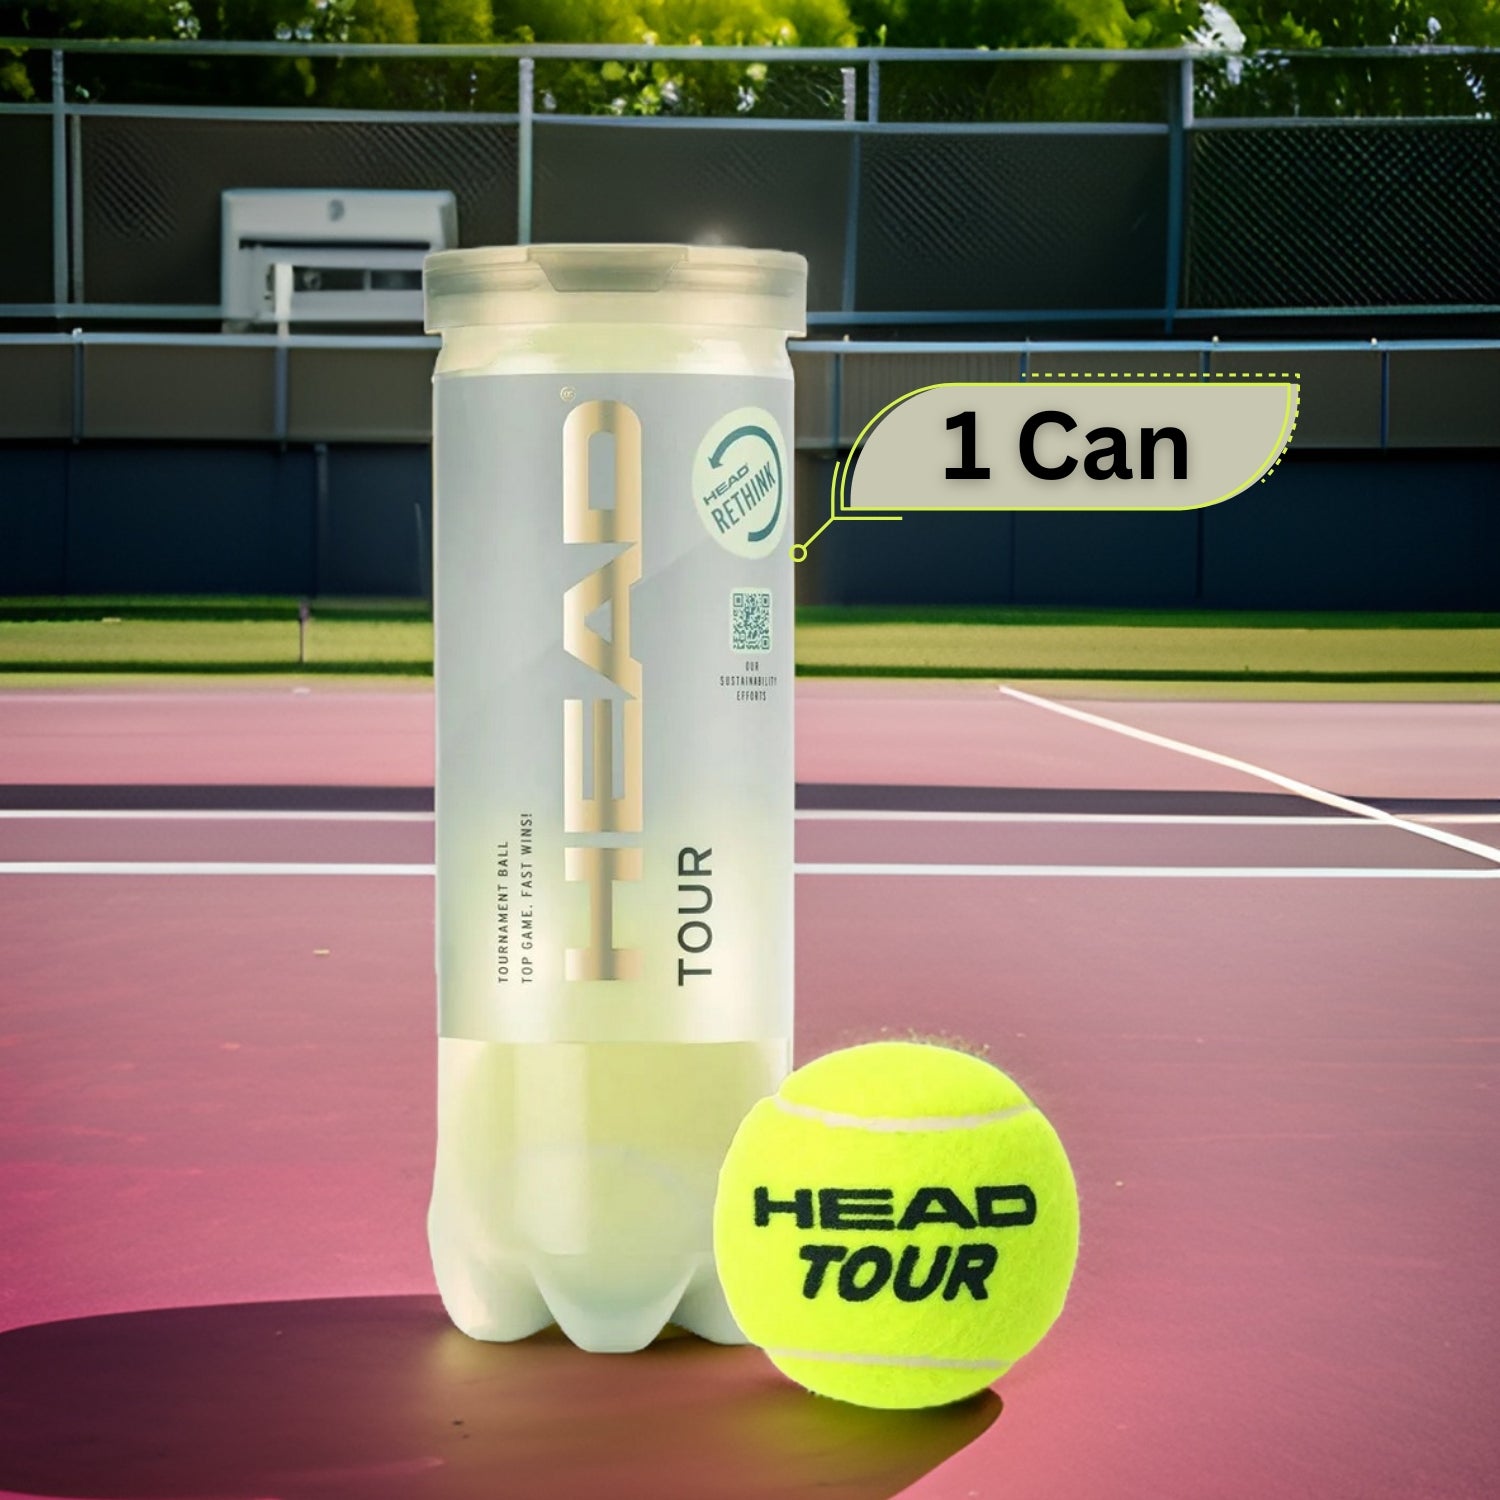 Head Tour Tennis Balls Can (1 Can) - Best Price online Prokicksports.com